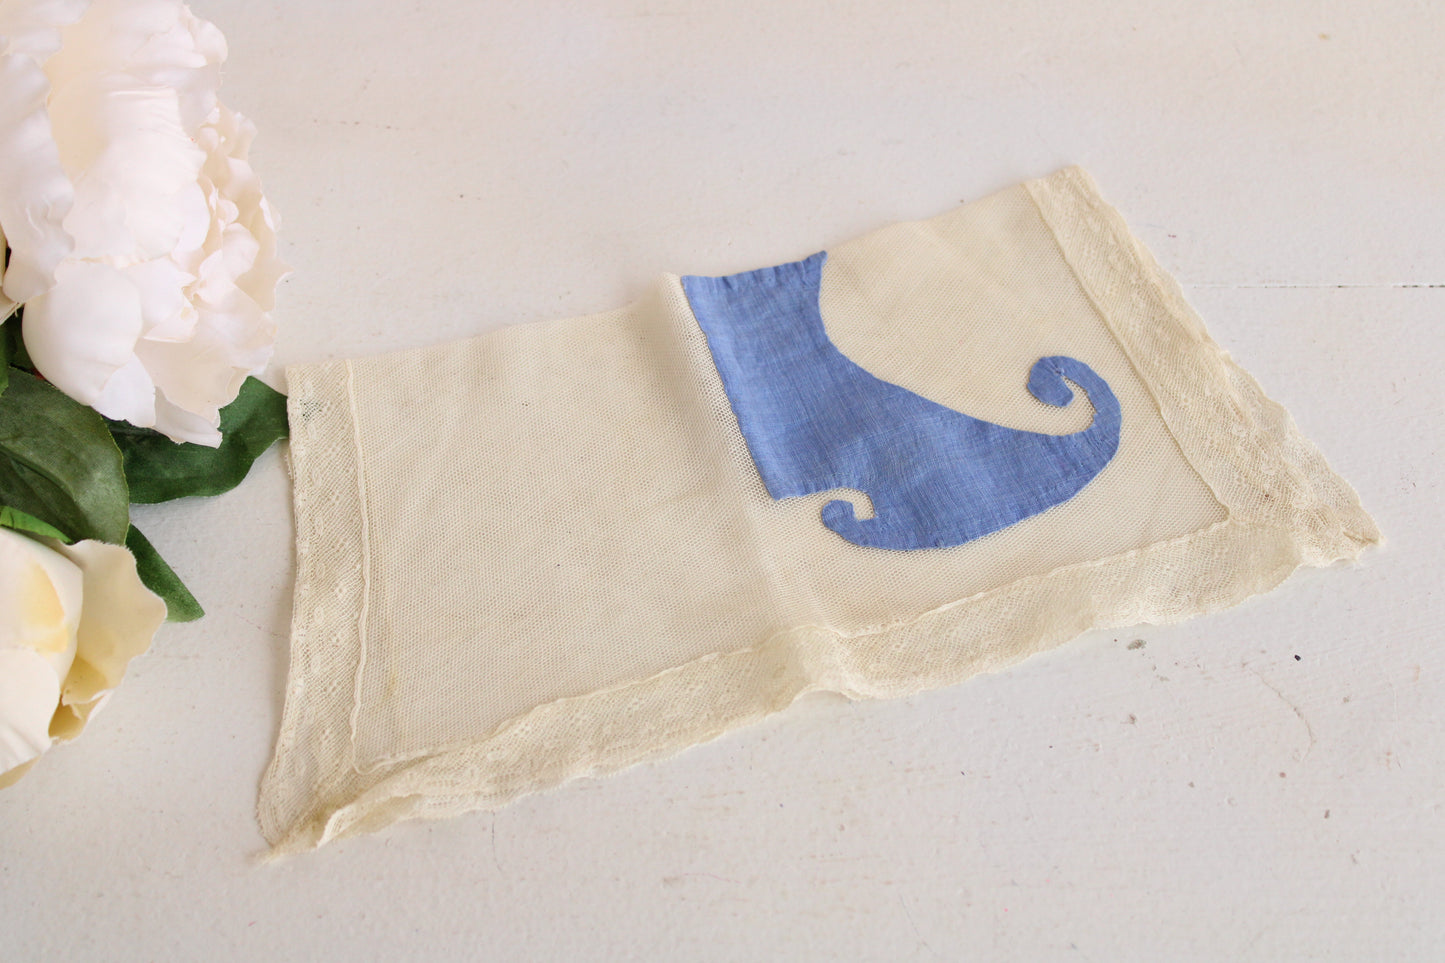 Antique Lace Handkerchief with Blue Applique